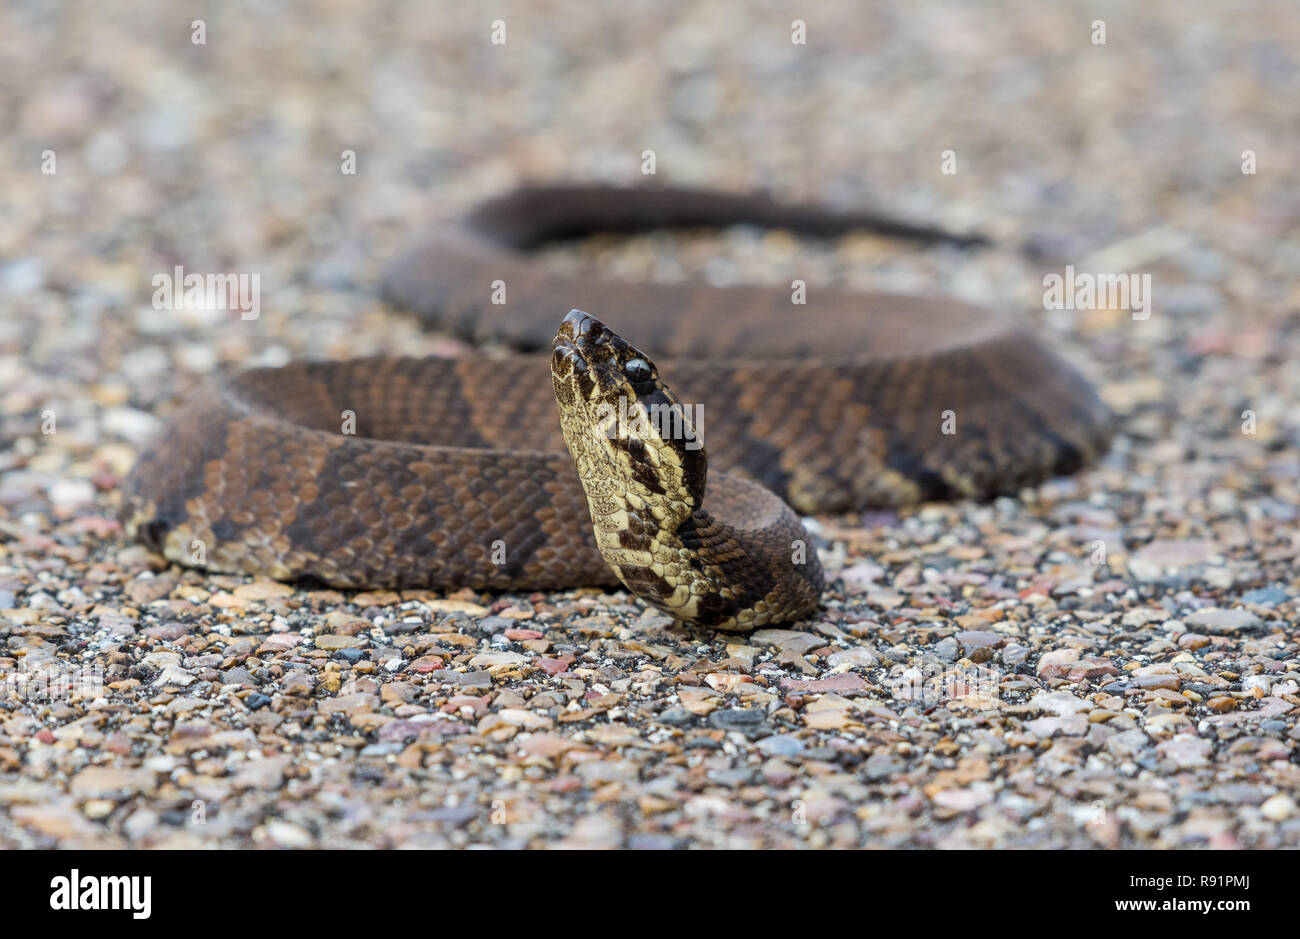 Cottonmouth snake (Agkistrodon piscivorus), eine Pflanzenart aus der Gattung der giftigen pit Viper in SE United States gefunden. Aransas National Wildlife Refuge, Texas, USA. Stockfoto